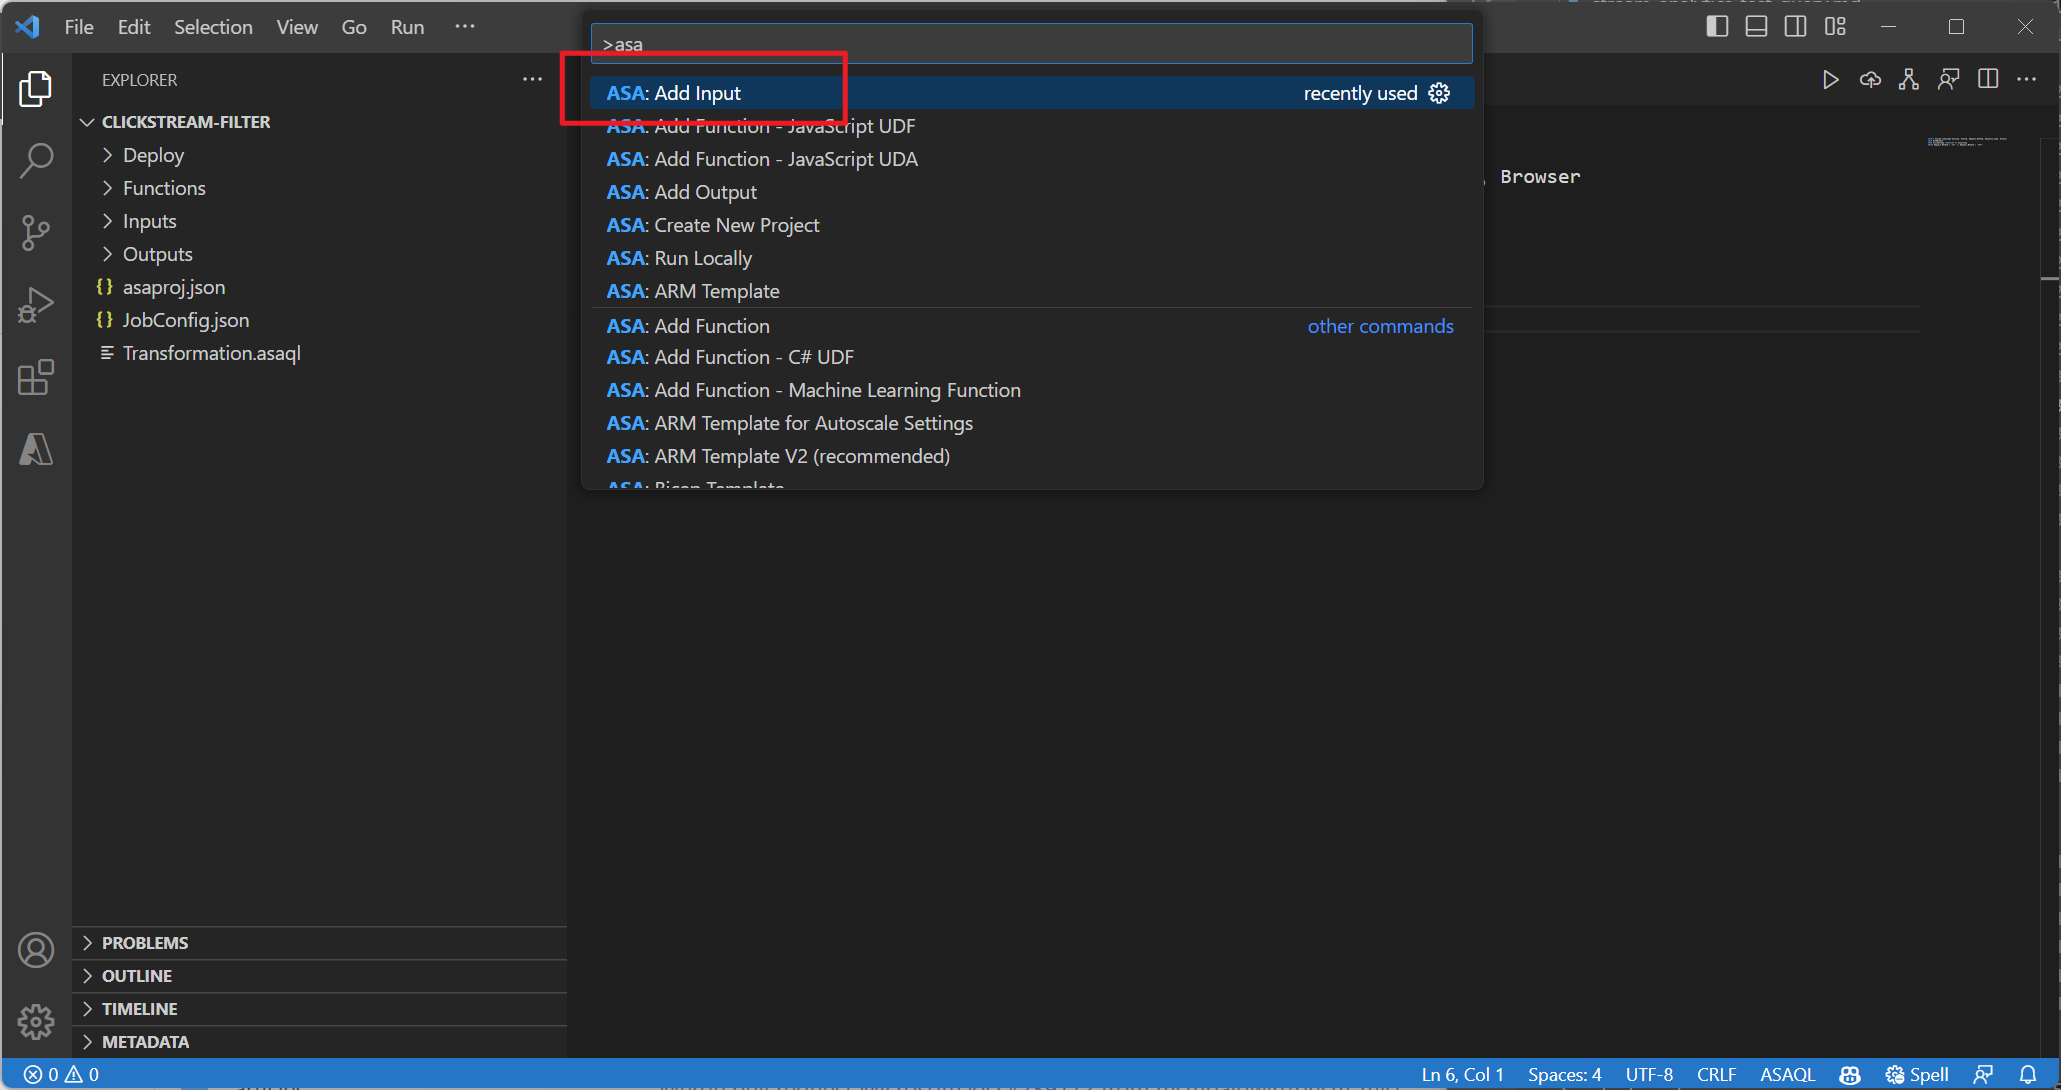 Captura de tela da extensão VSCode adicionando a entrada por meio da paleta de comandos.